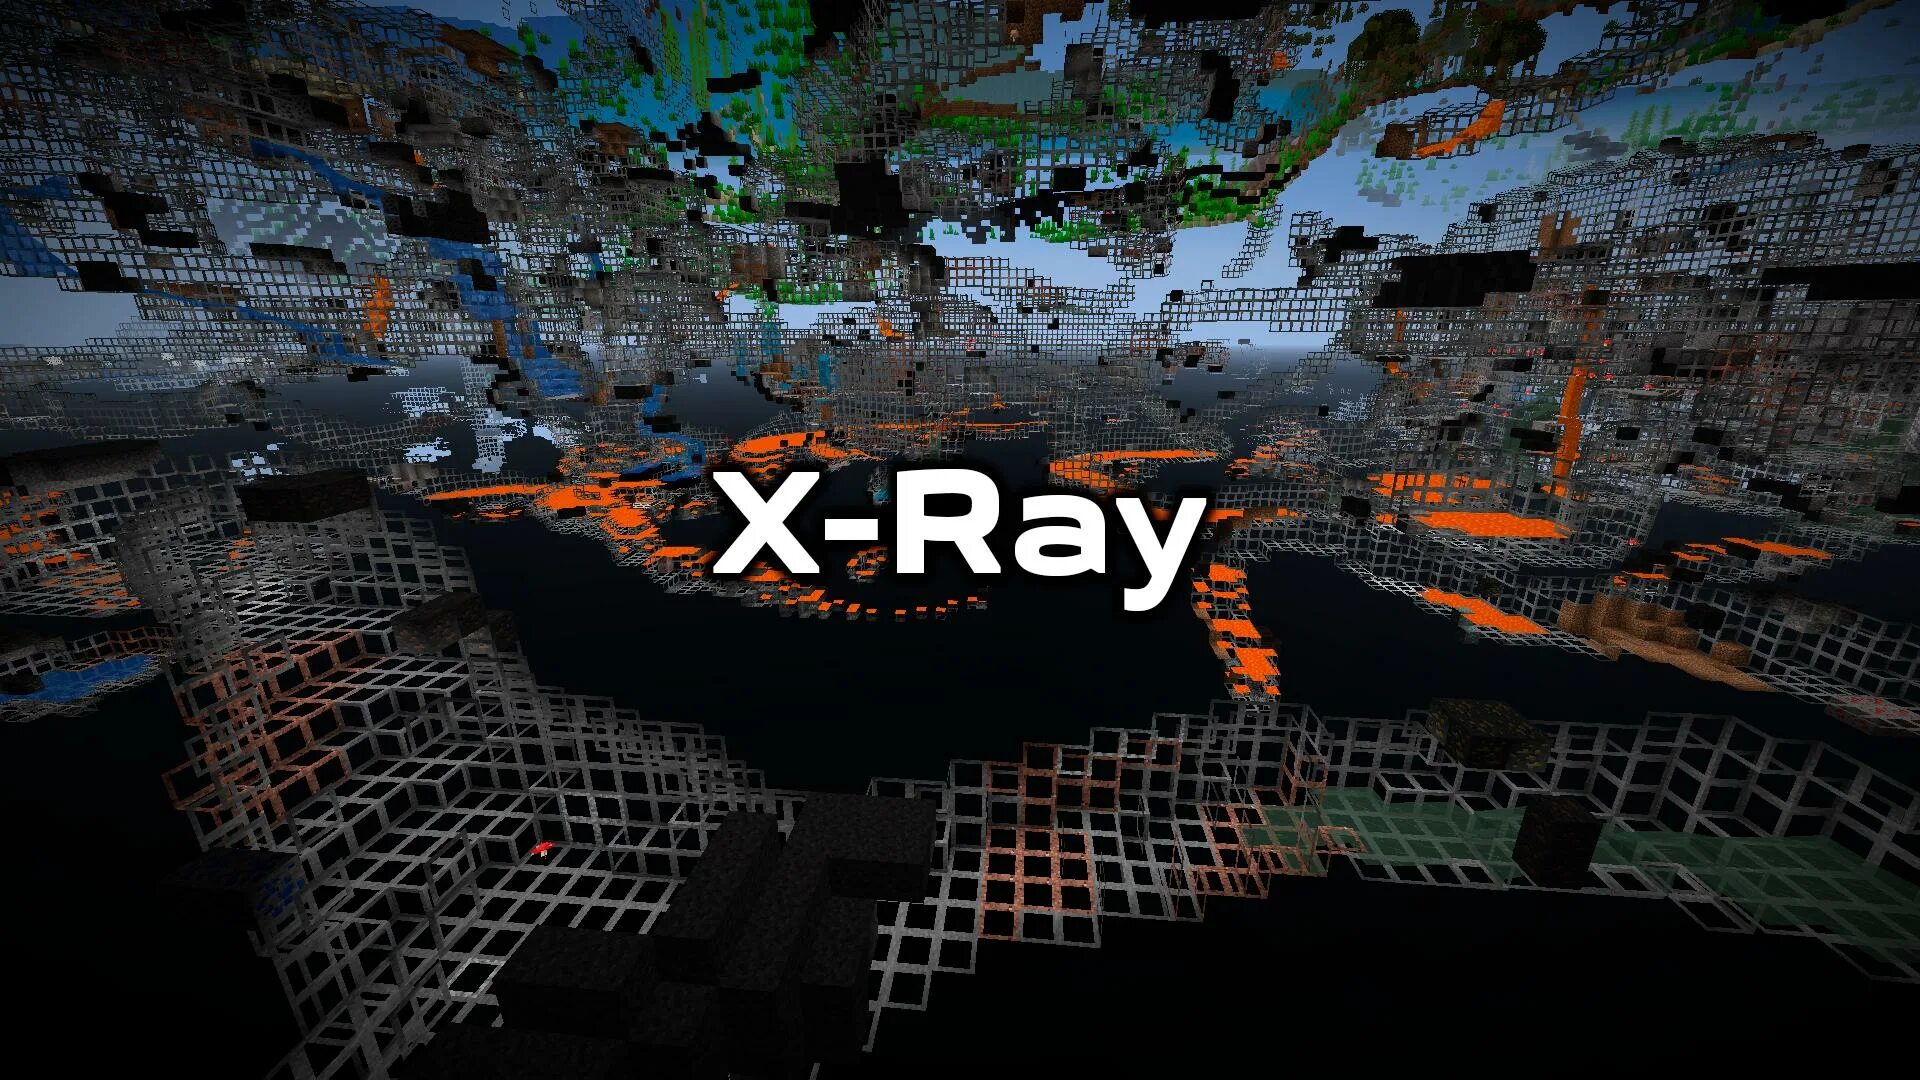 X ray текстур пак. XRAY майнкрафт текстур пак. X ray текстур пак 1.12.2. Икс Рей текстур пак 1 12 2.